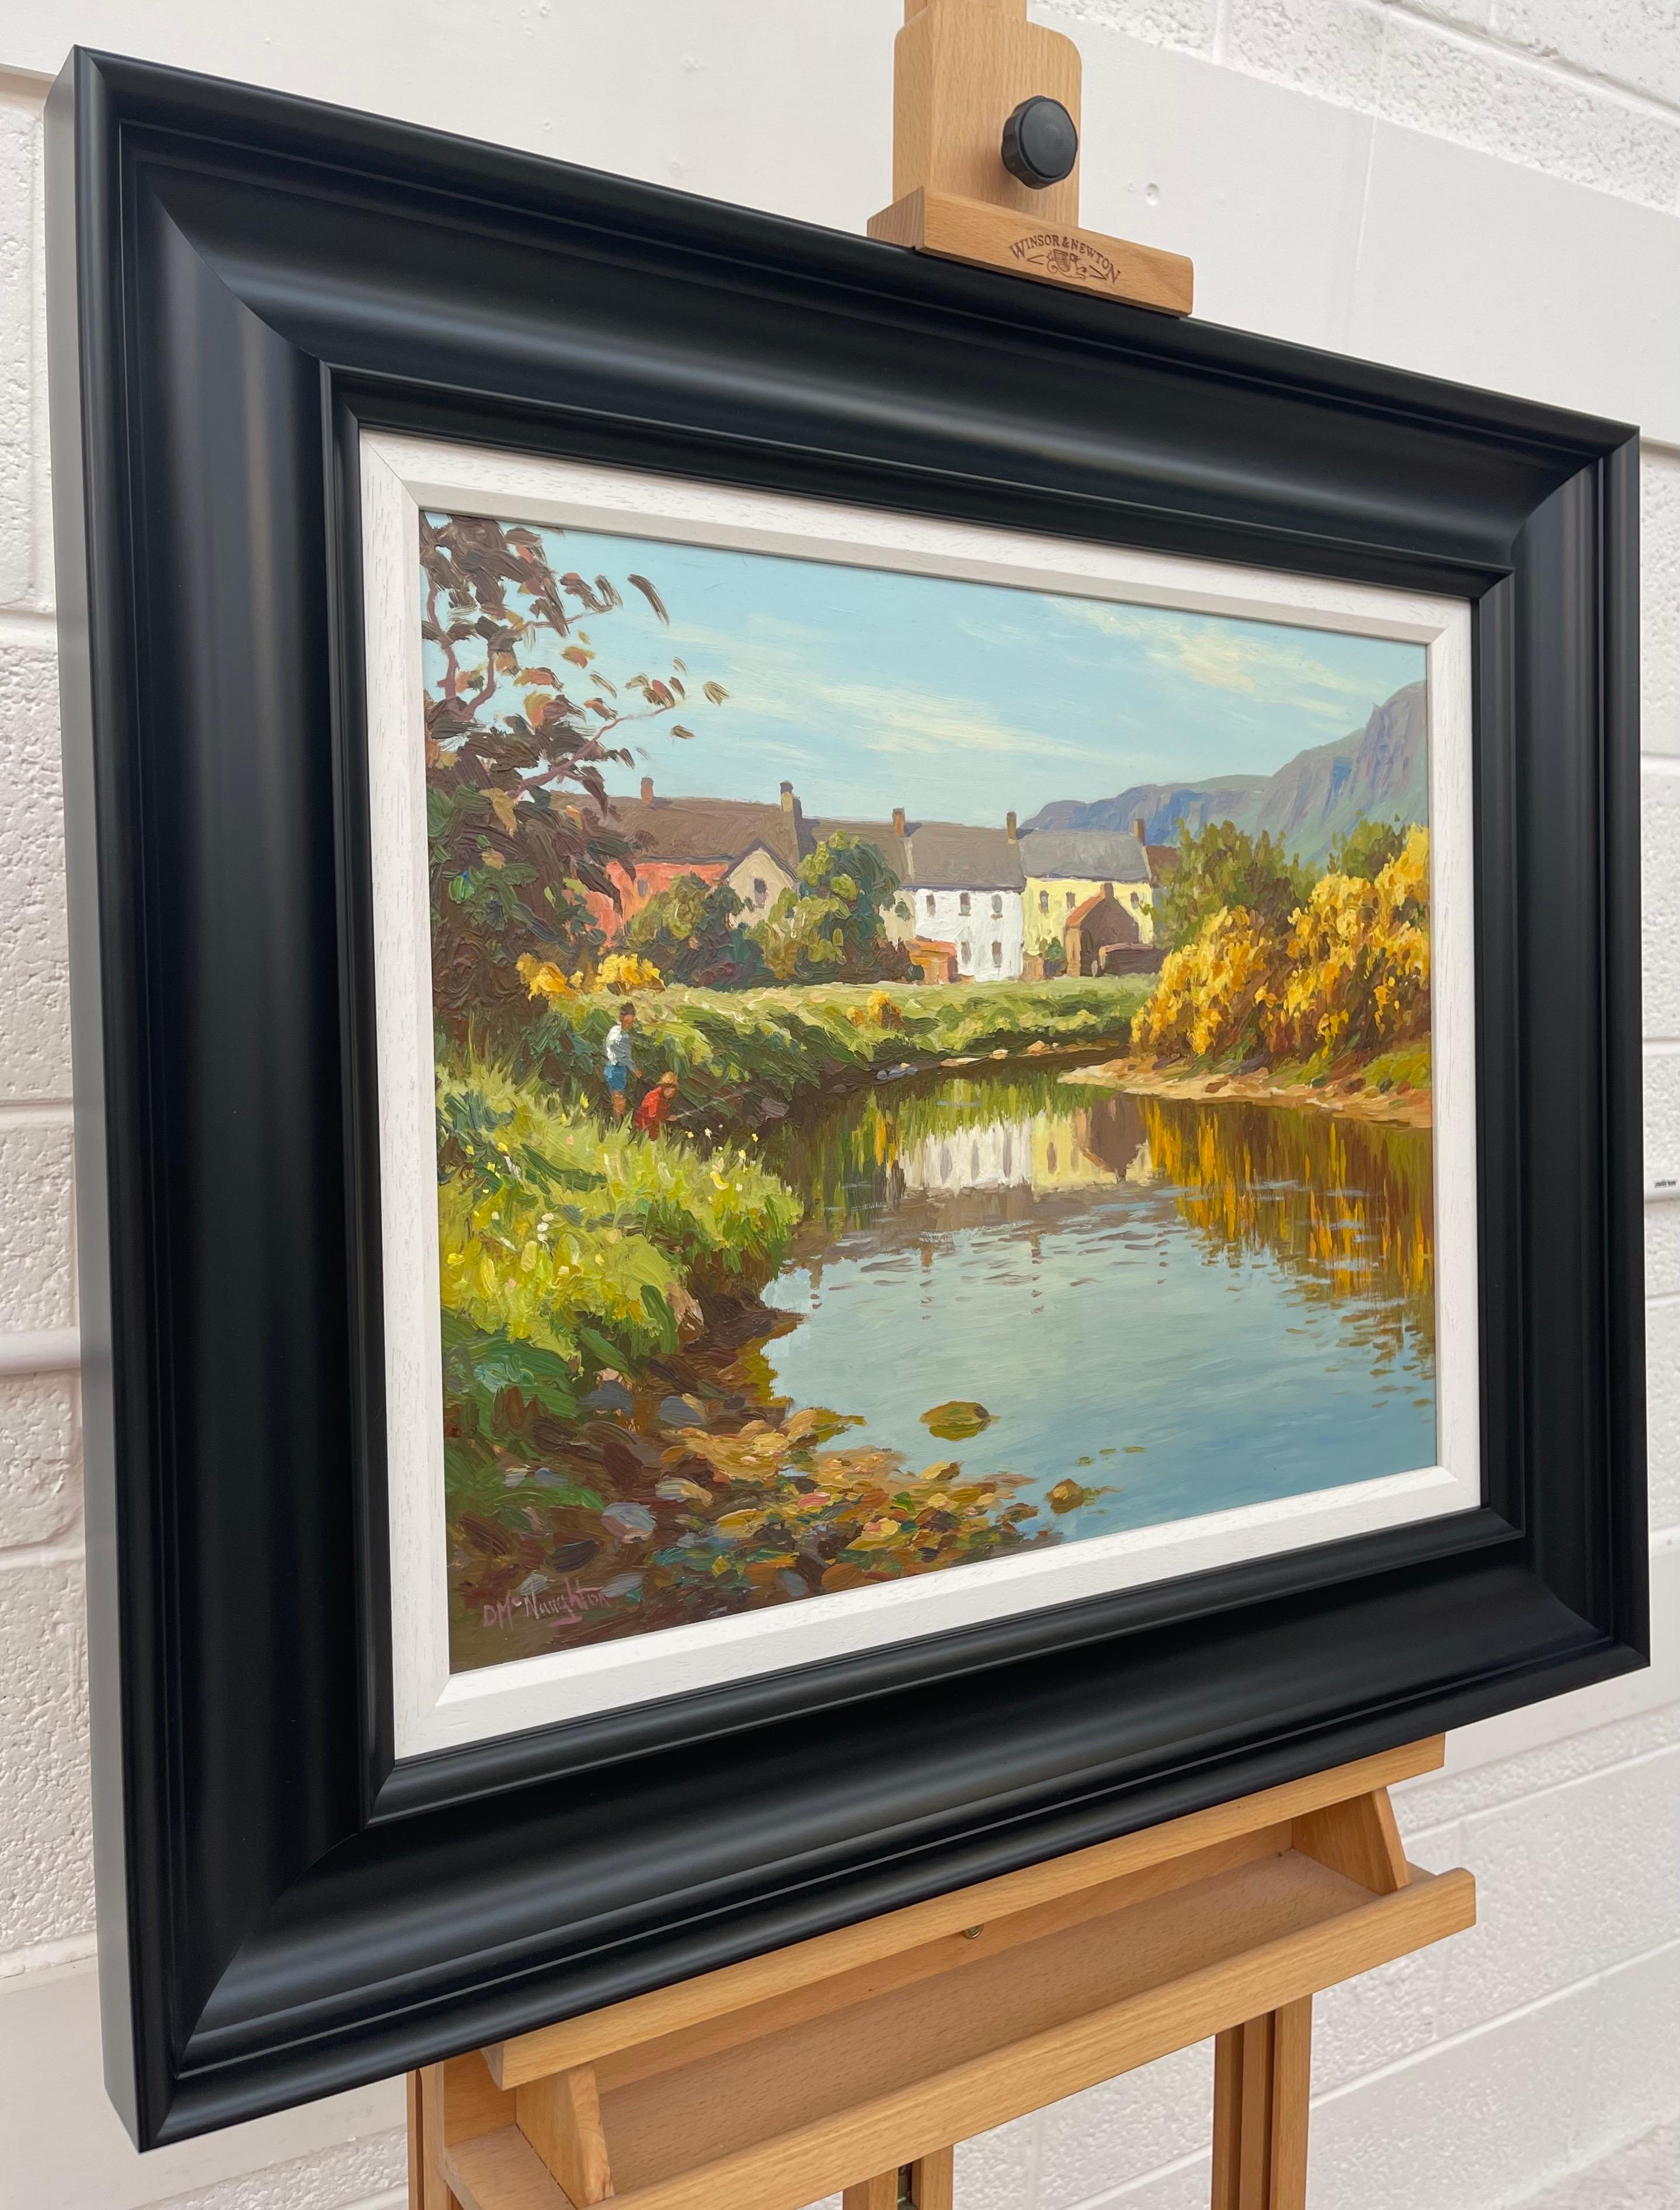 Fly Fishing River Scene in einem irischen Küstendorf Irland von einem zeitgenössischen irischen Künstler – Painting von Donal McNaughton